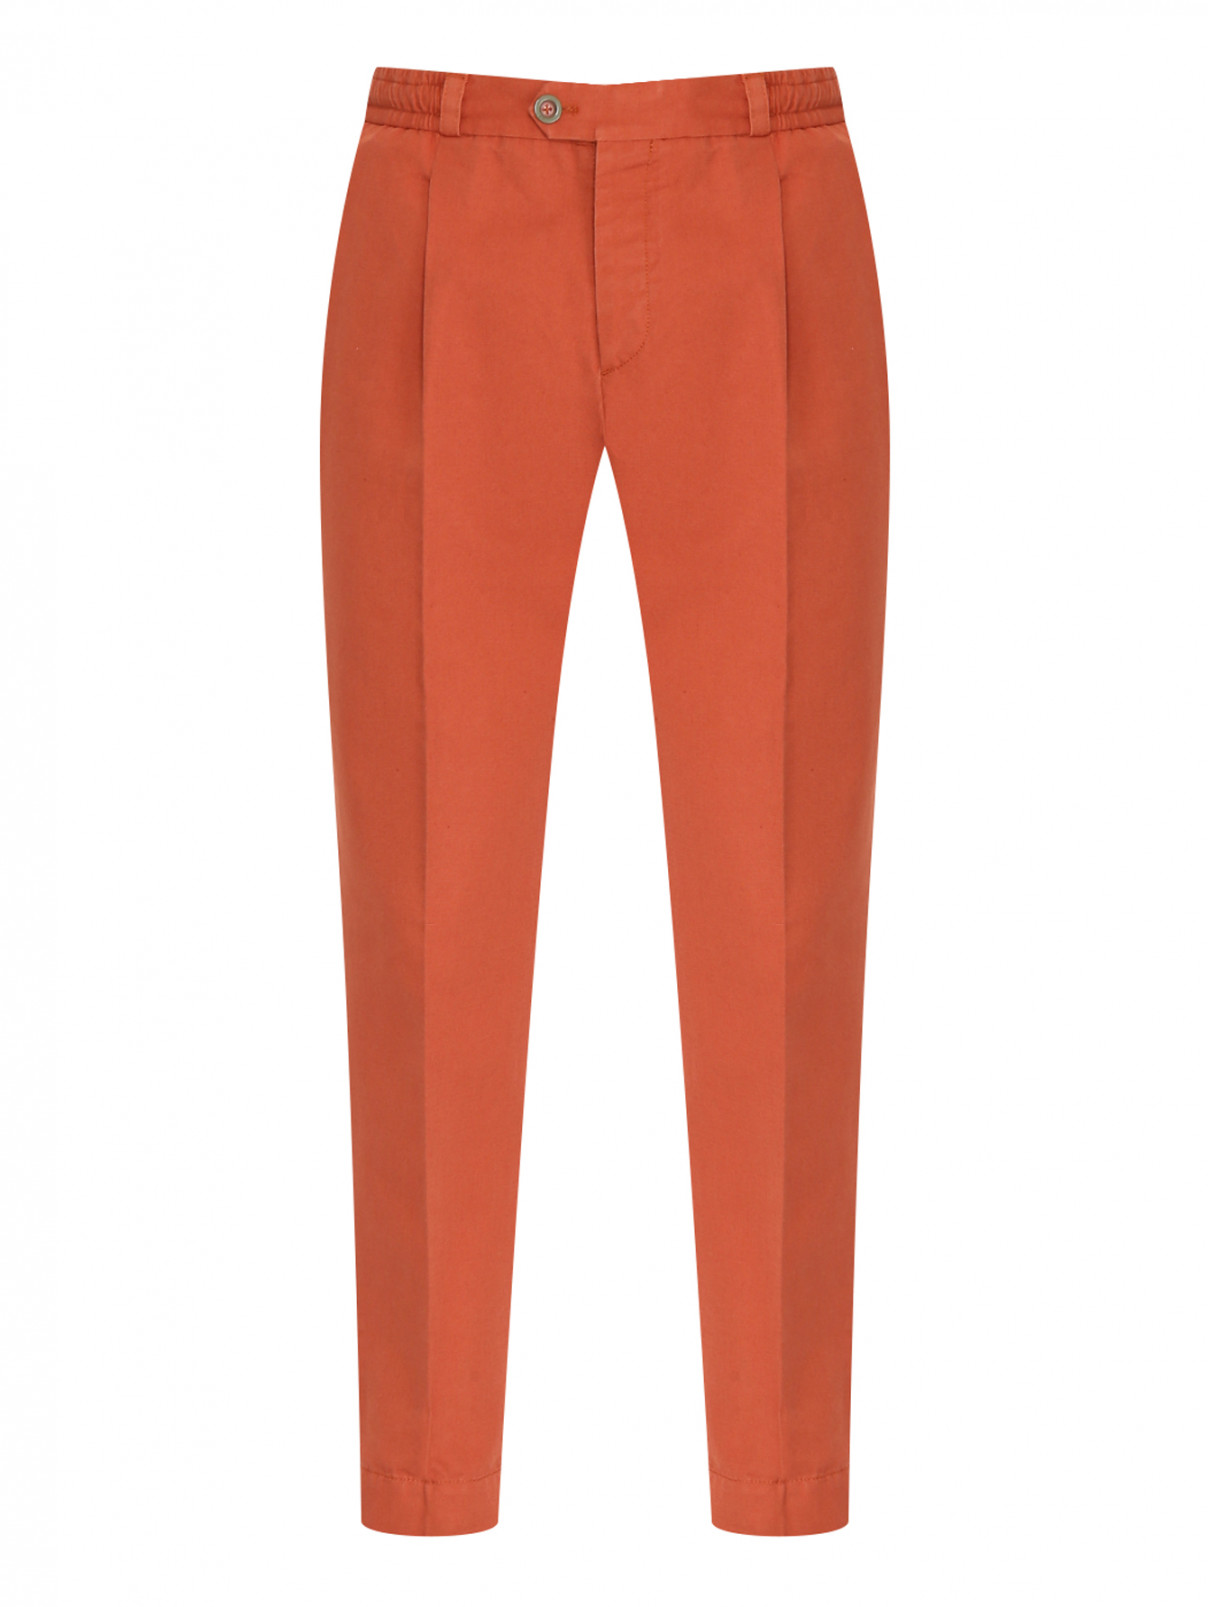 Однотонные брюки из смеси хлопка и льна PT Torino  –  Общий вид  – Цвет:  Оранжевый